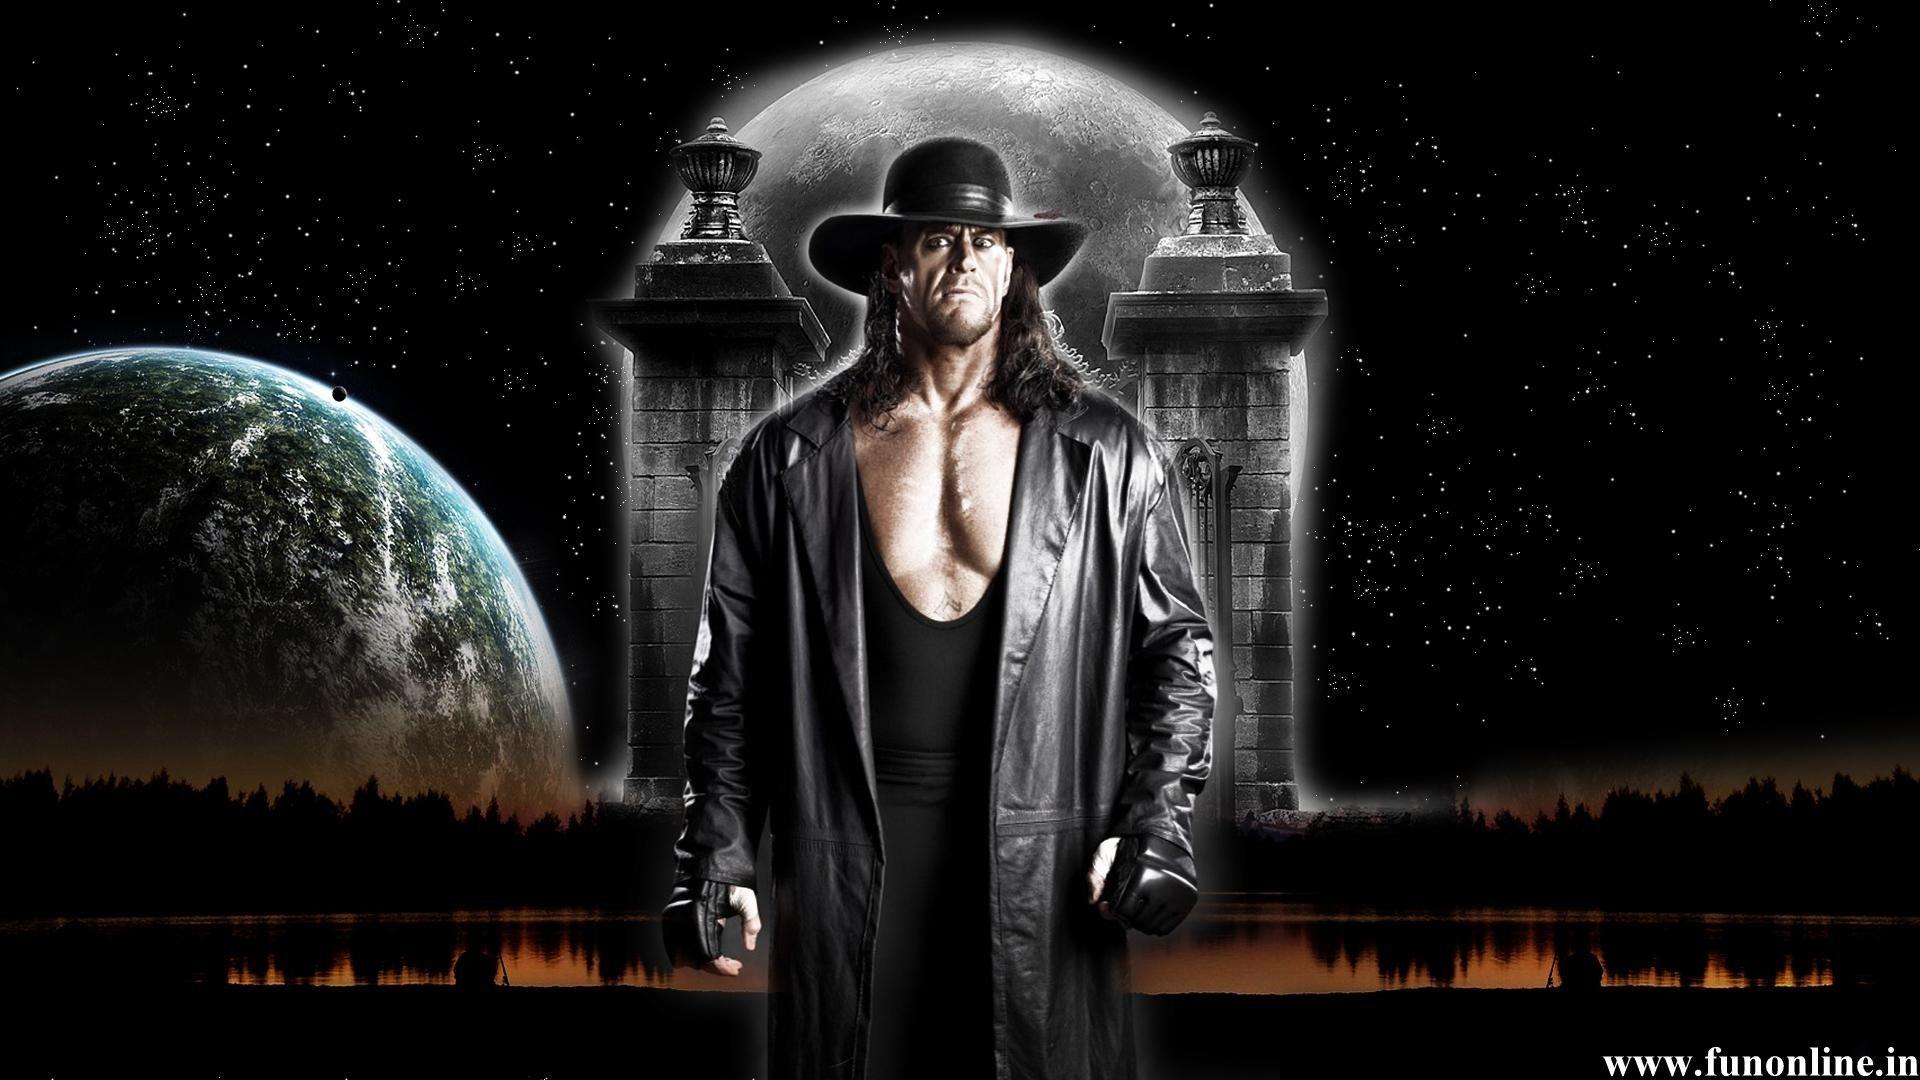 Wwe Legendary Superstar The Undertaker